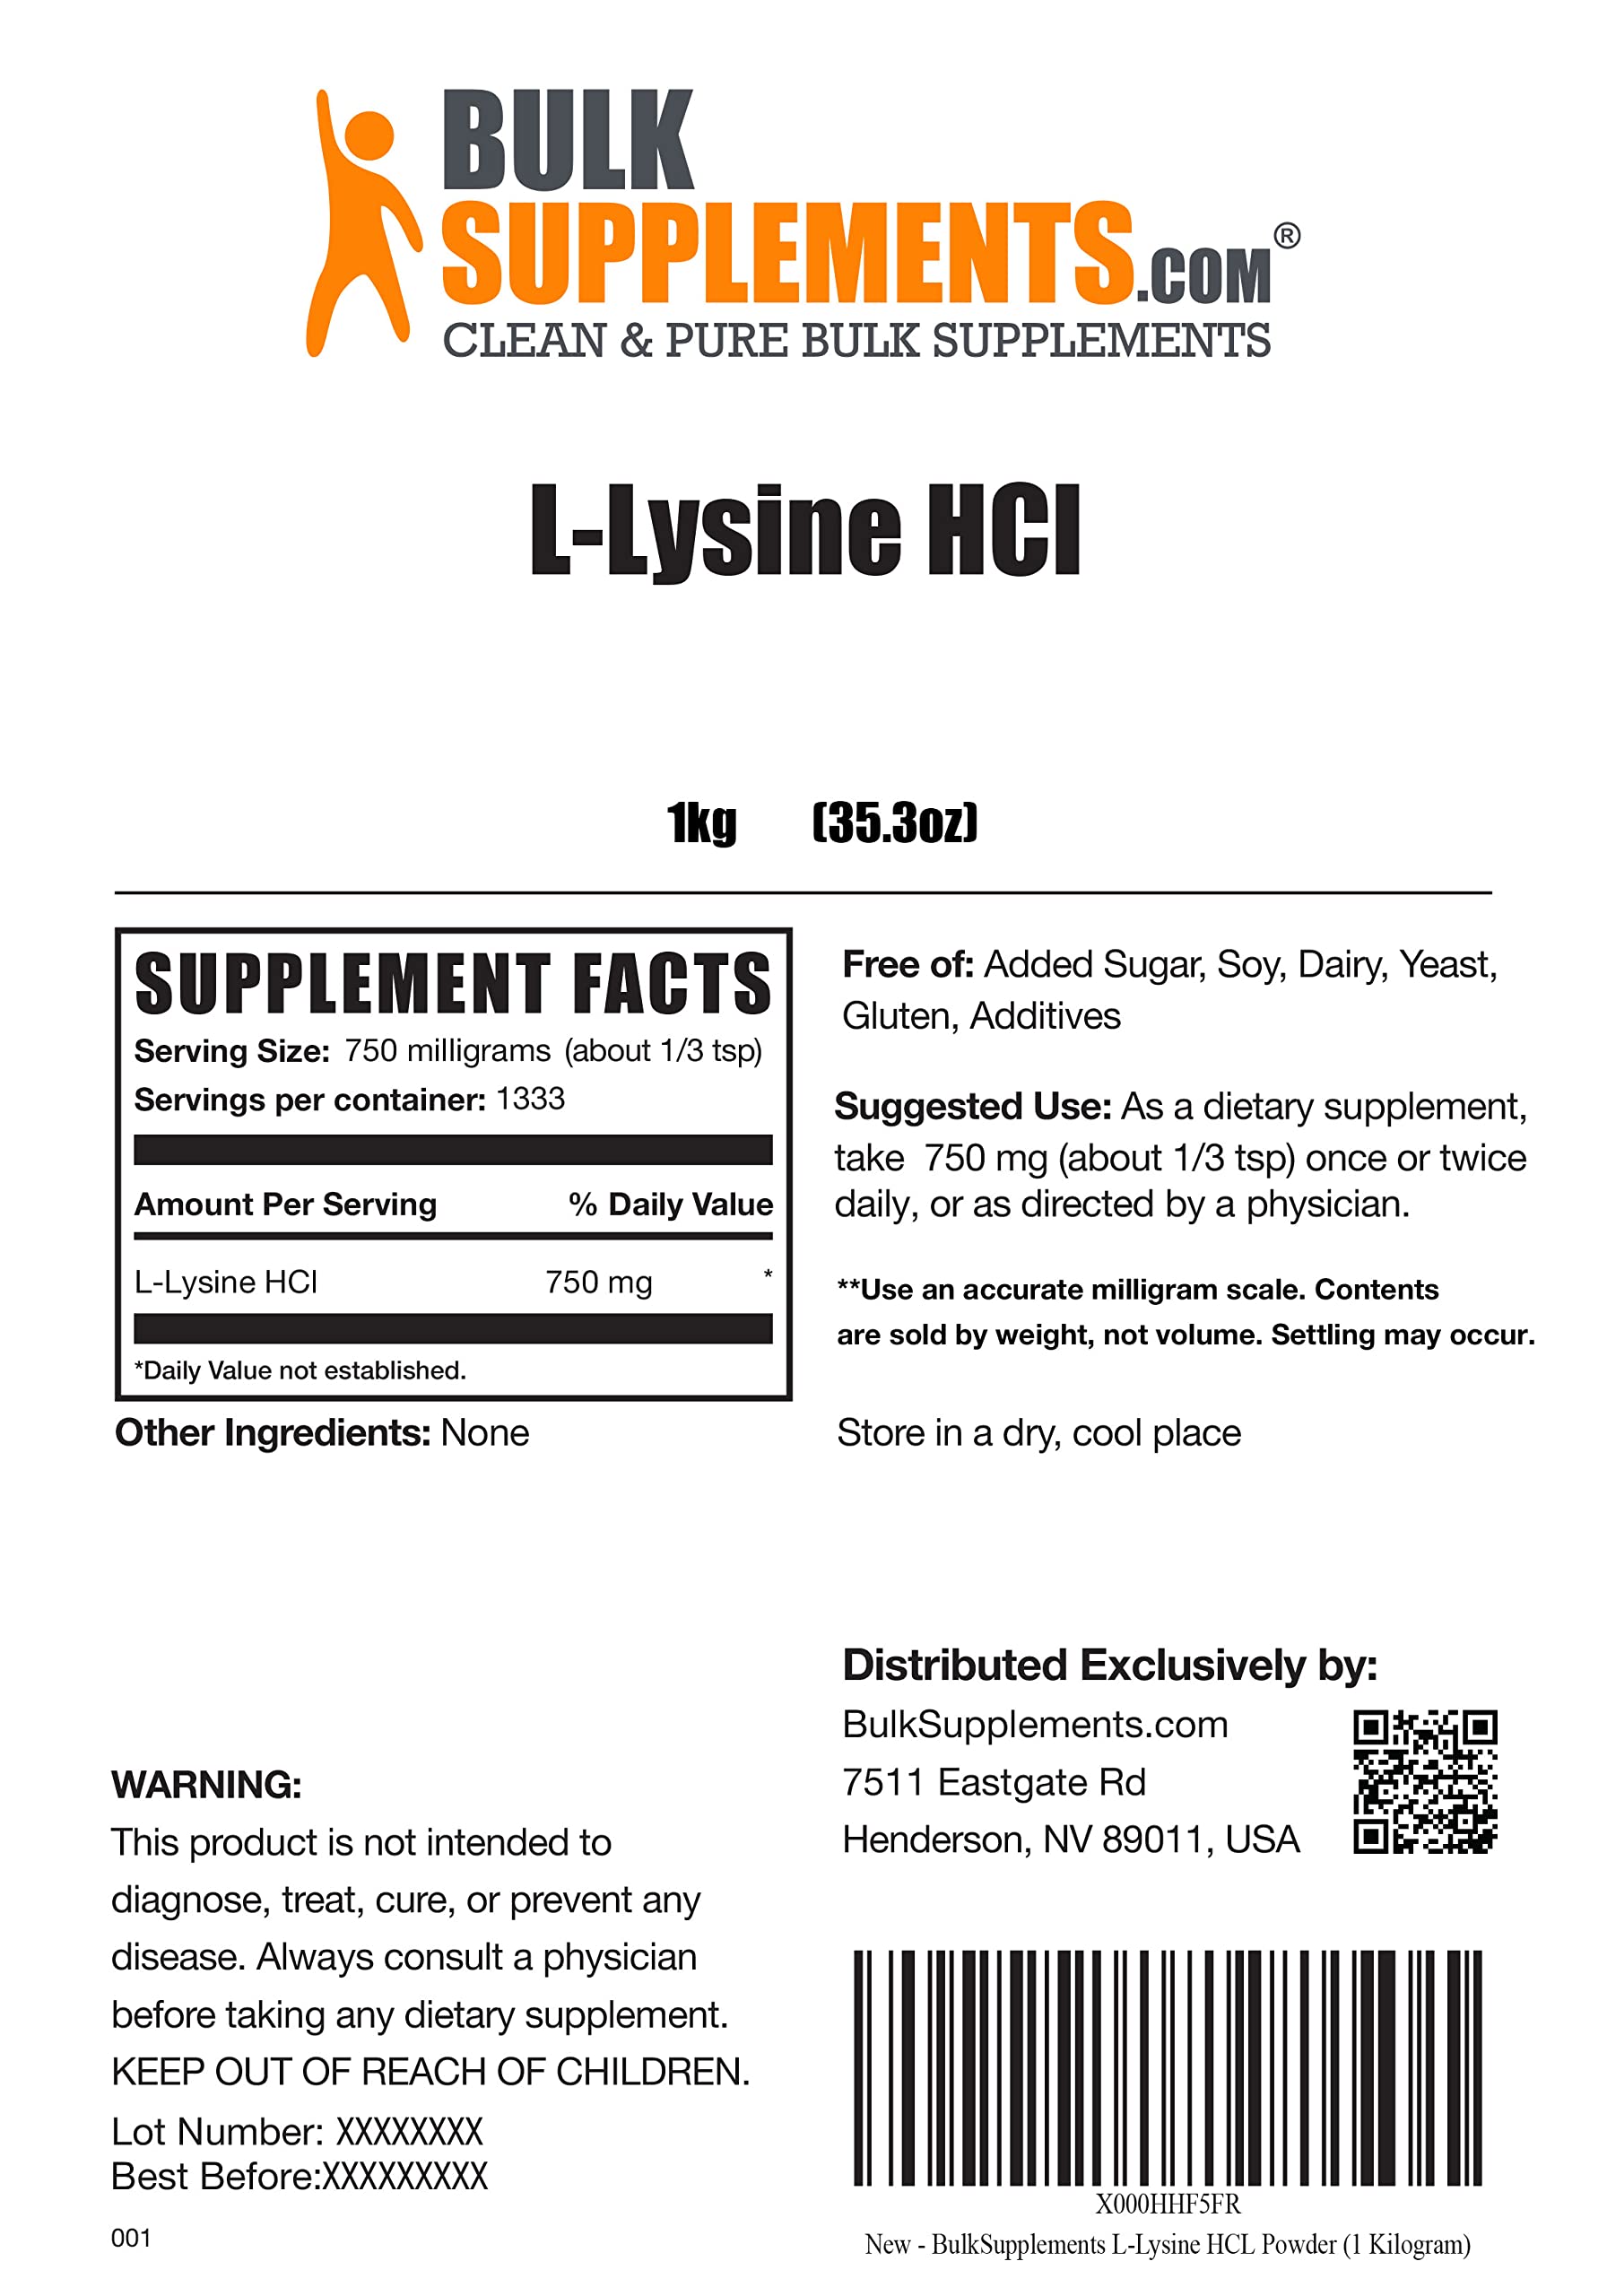 BULKSUPPLEMENTS.COM Glycine Powder 1KG, with NAC Powder (N-Acetyl L-Cysteine) 100G, Creatine Monohydrate Powder (Micronized Creatine) 500G & L-Lysine Powder (L-Lysine HCl) 1KG Bundle